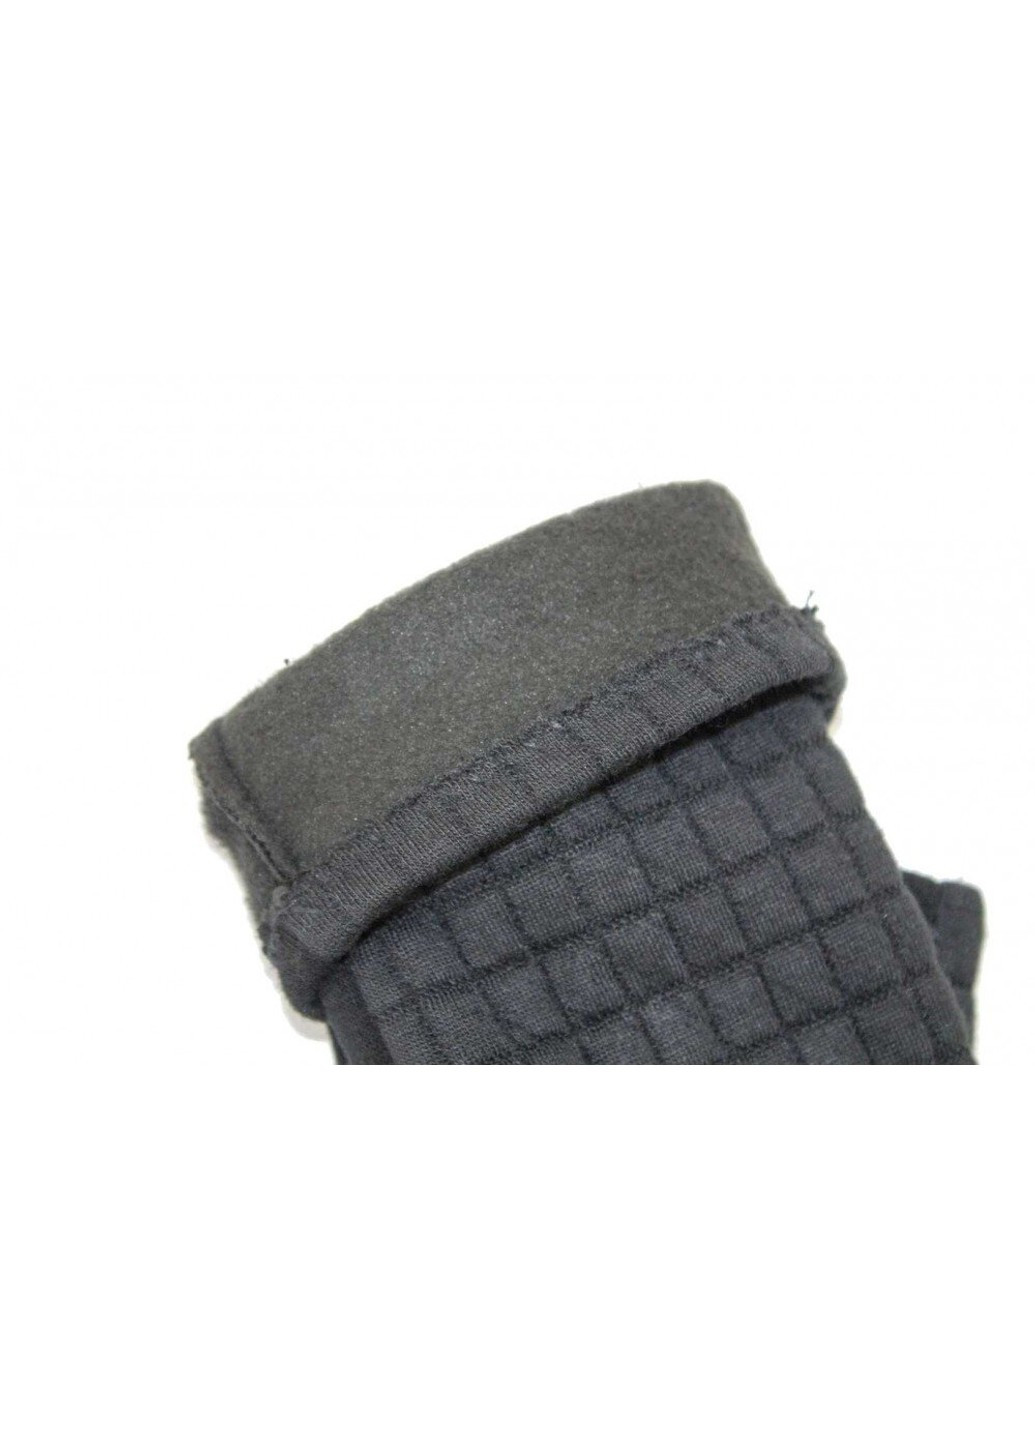 Жіночі чорні стрейчеві рукавички 821s2 М BR-S (261486842)